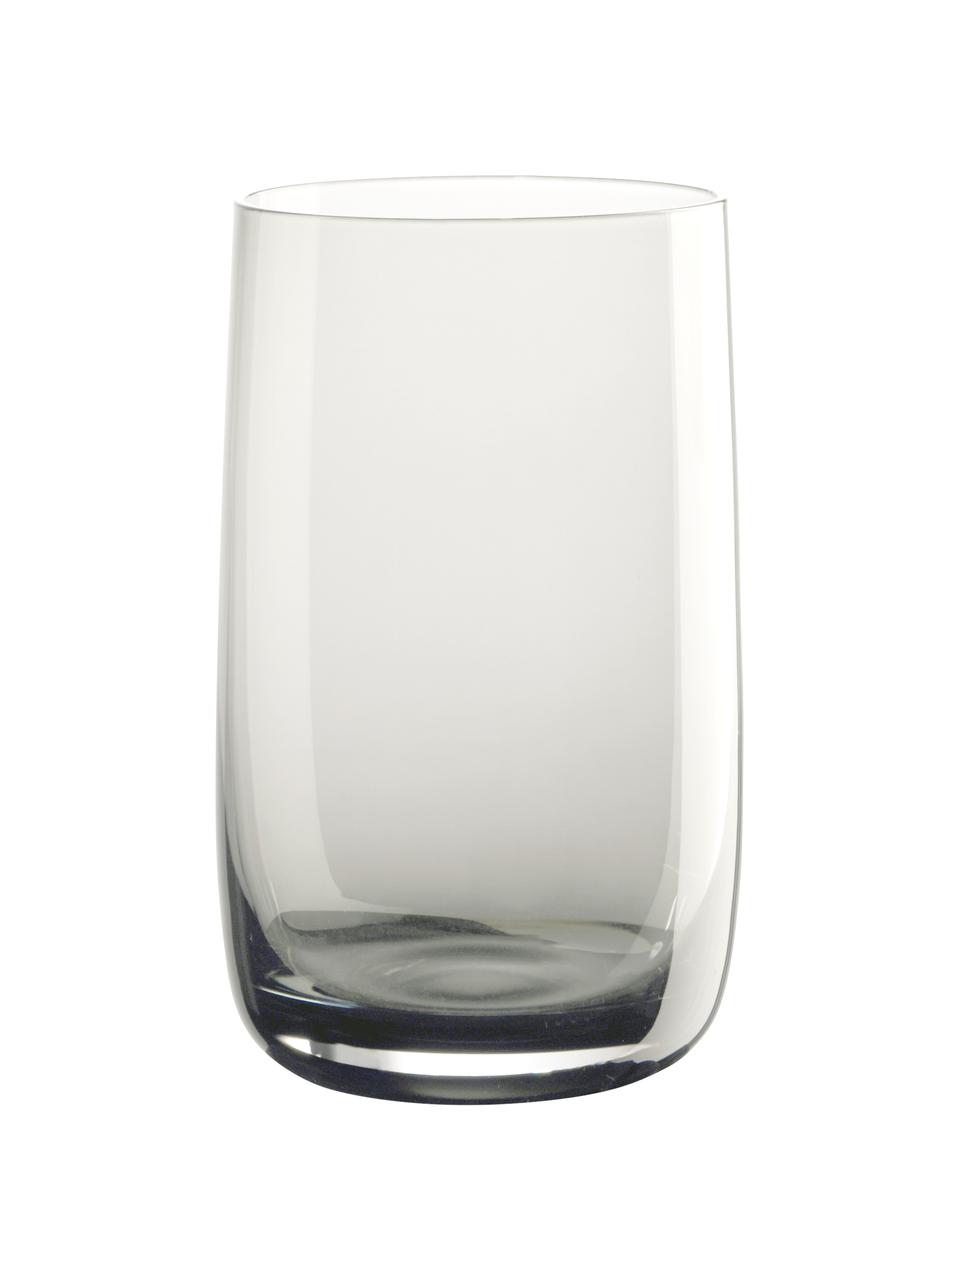 Wassergläser Colored in Grau, 6 Stück, Glas, Grau, transparent, Ø 7 x H 13 cm